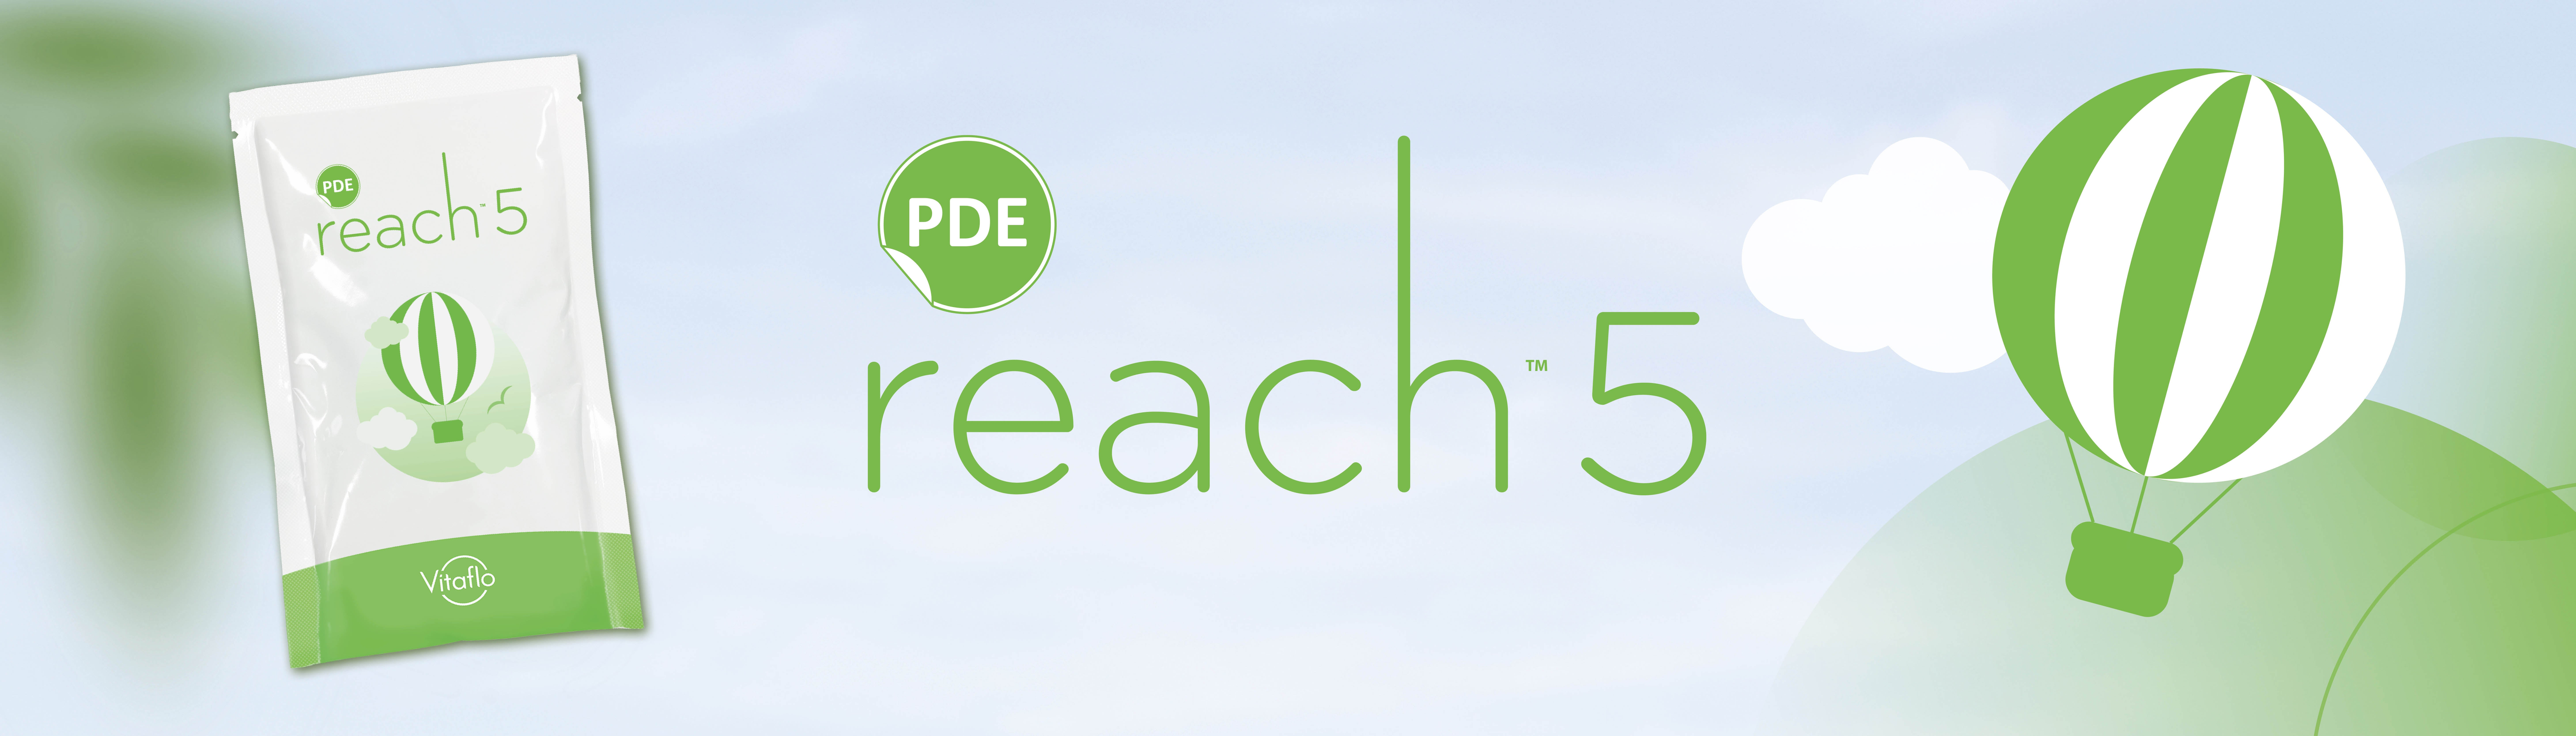 PDE Reach5 Banner